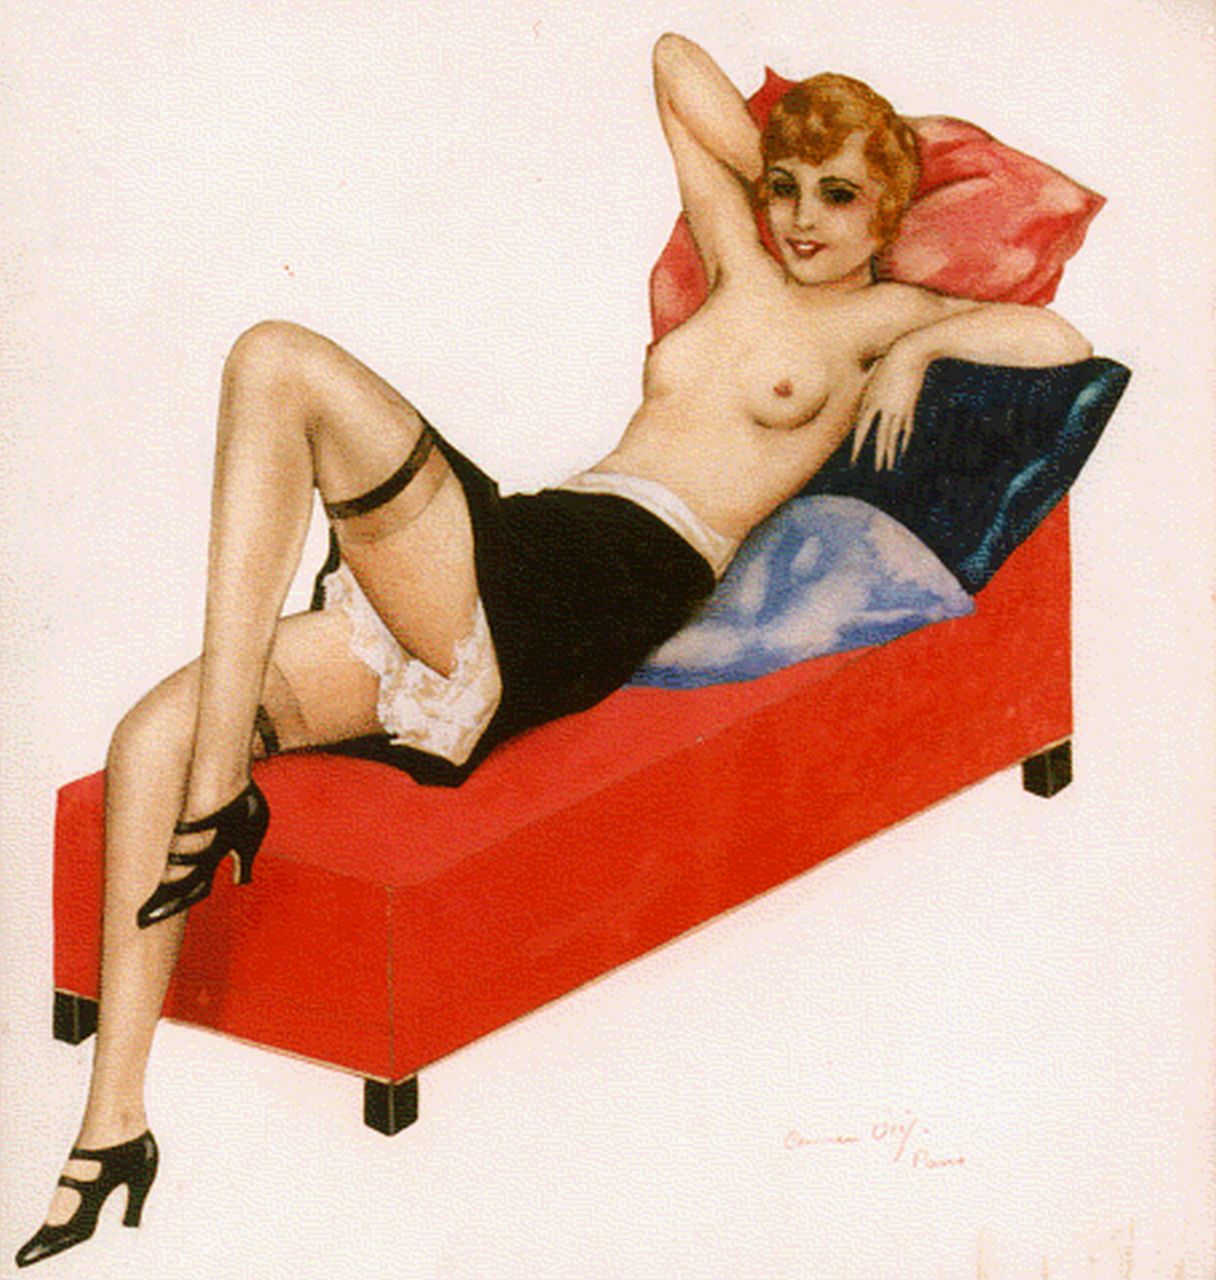 C. Osef | Vrouw op sofa, Paris, gemengde techniek op papier, 26,0 x 24,0 cm, gesigneerd r.o.